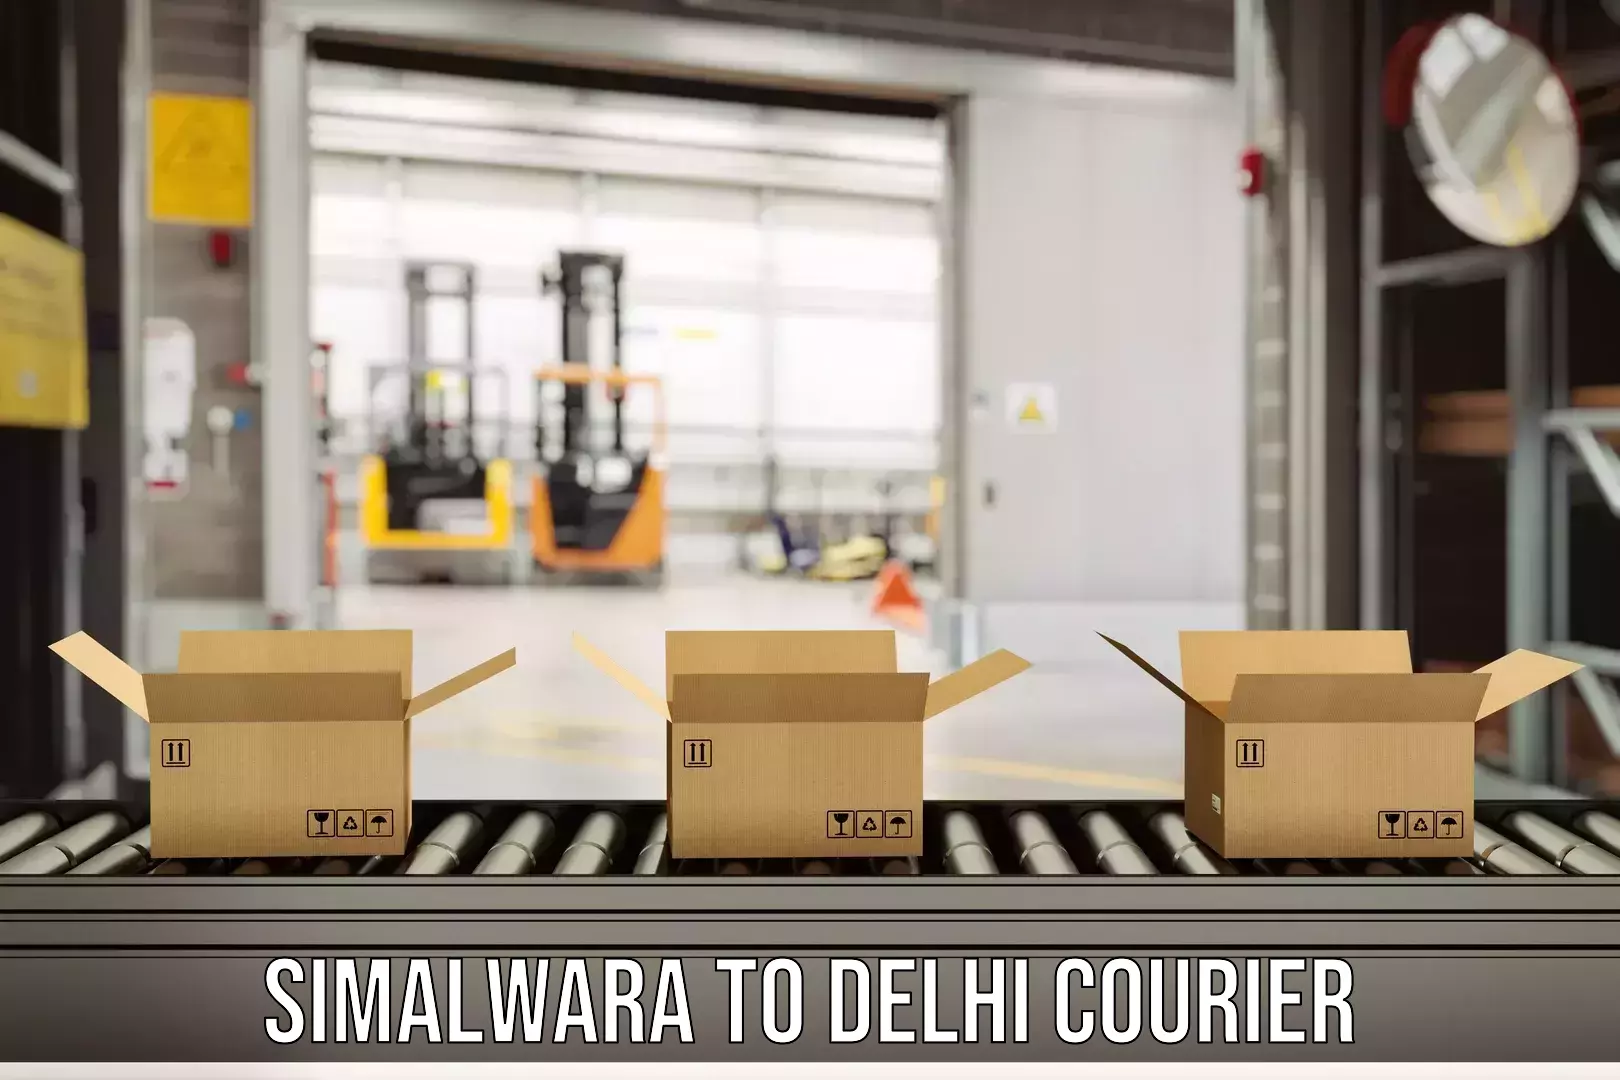 Large package courier Simalwara to Subhash Nagar